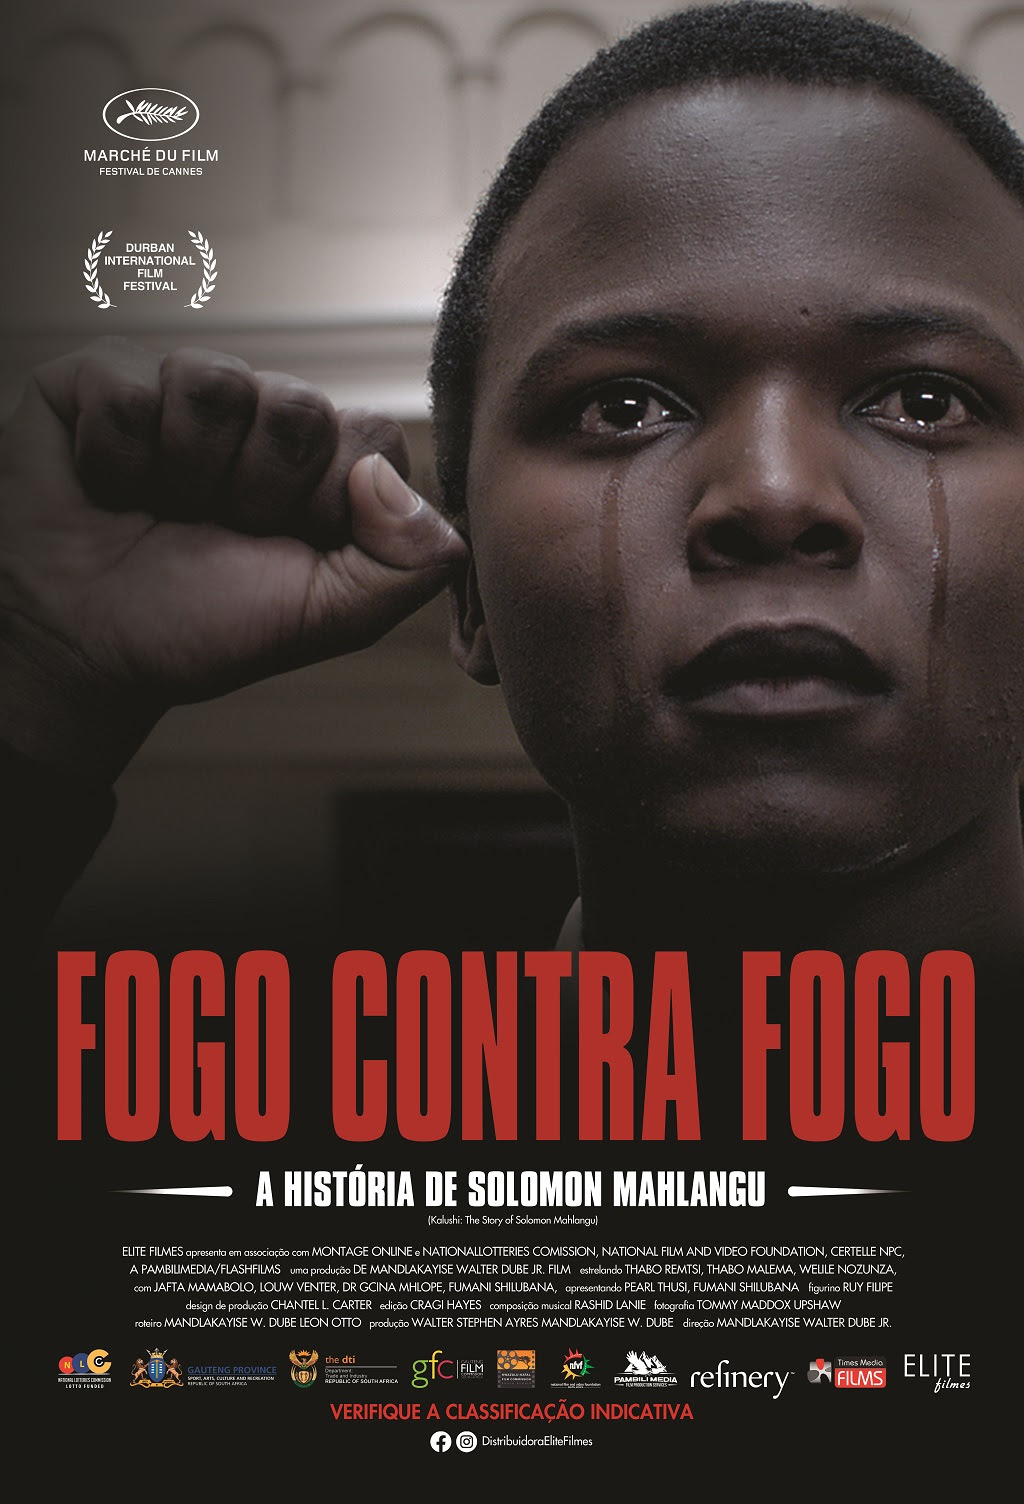 Em 21 de novembro, logo após o Dia Nacional da Consciência Negra, será lançado nos cinemas brasileiros o comovente drama biográfico “Fogo Contra Fogo”.